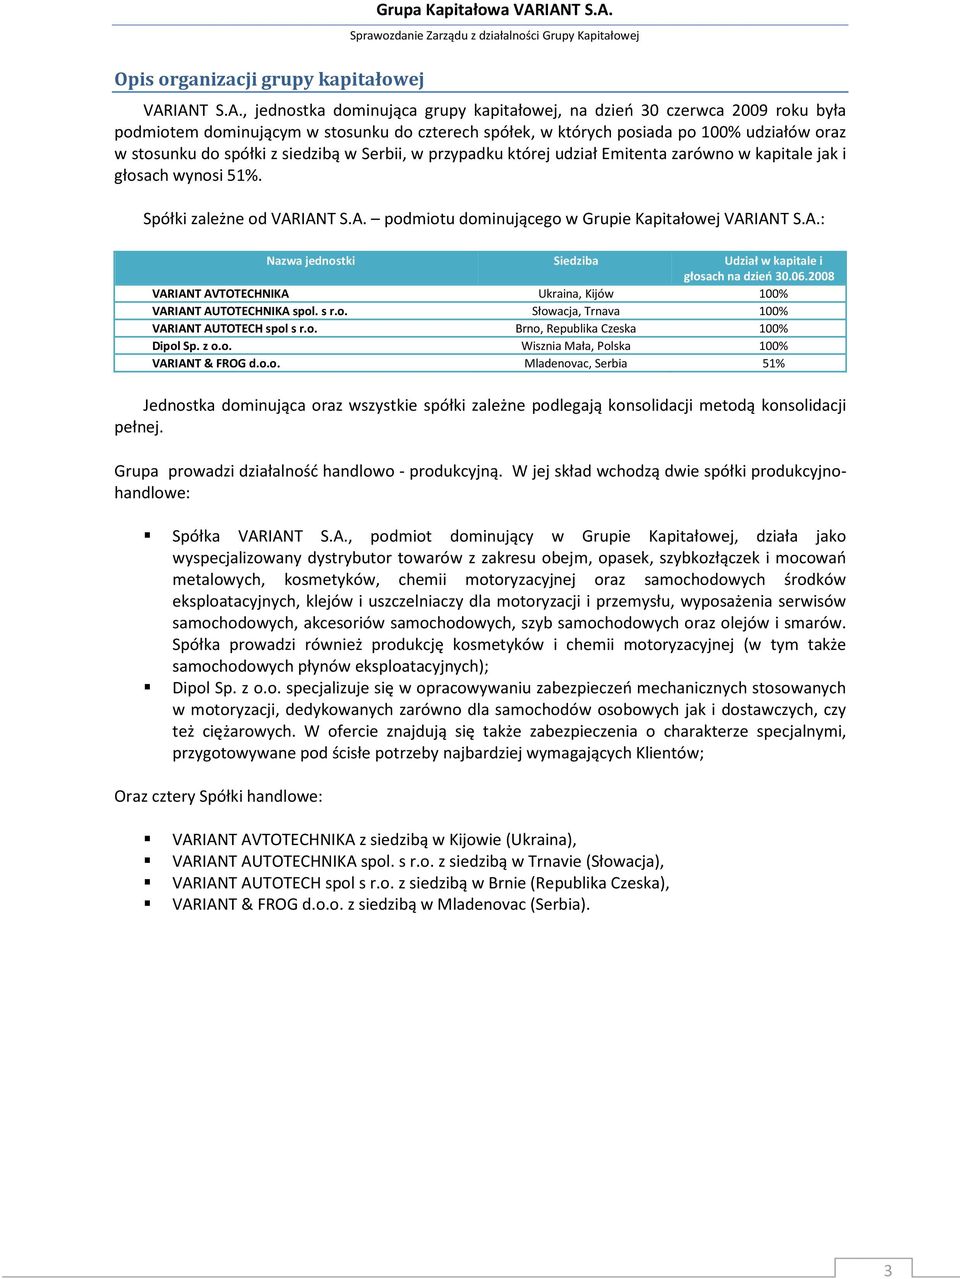 stosunku do spółki z siedzibą w Serbii, w przypadku której udział Emitenta zarówno w kapitale jak i głosach wynosi 51%. Spółki zależne od VARIANT S.A. podmiotu dominującego w Grupie Kapitałowej VARIANT S.